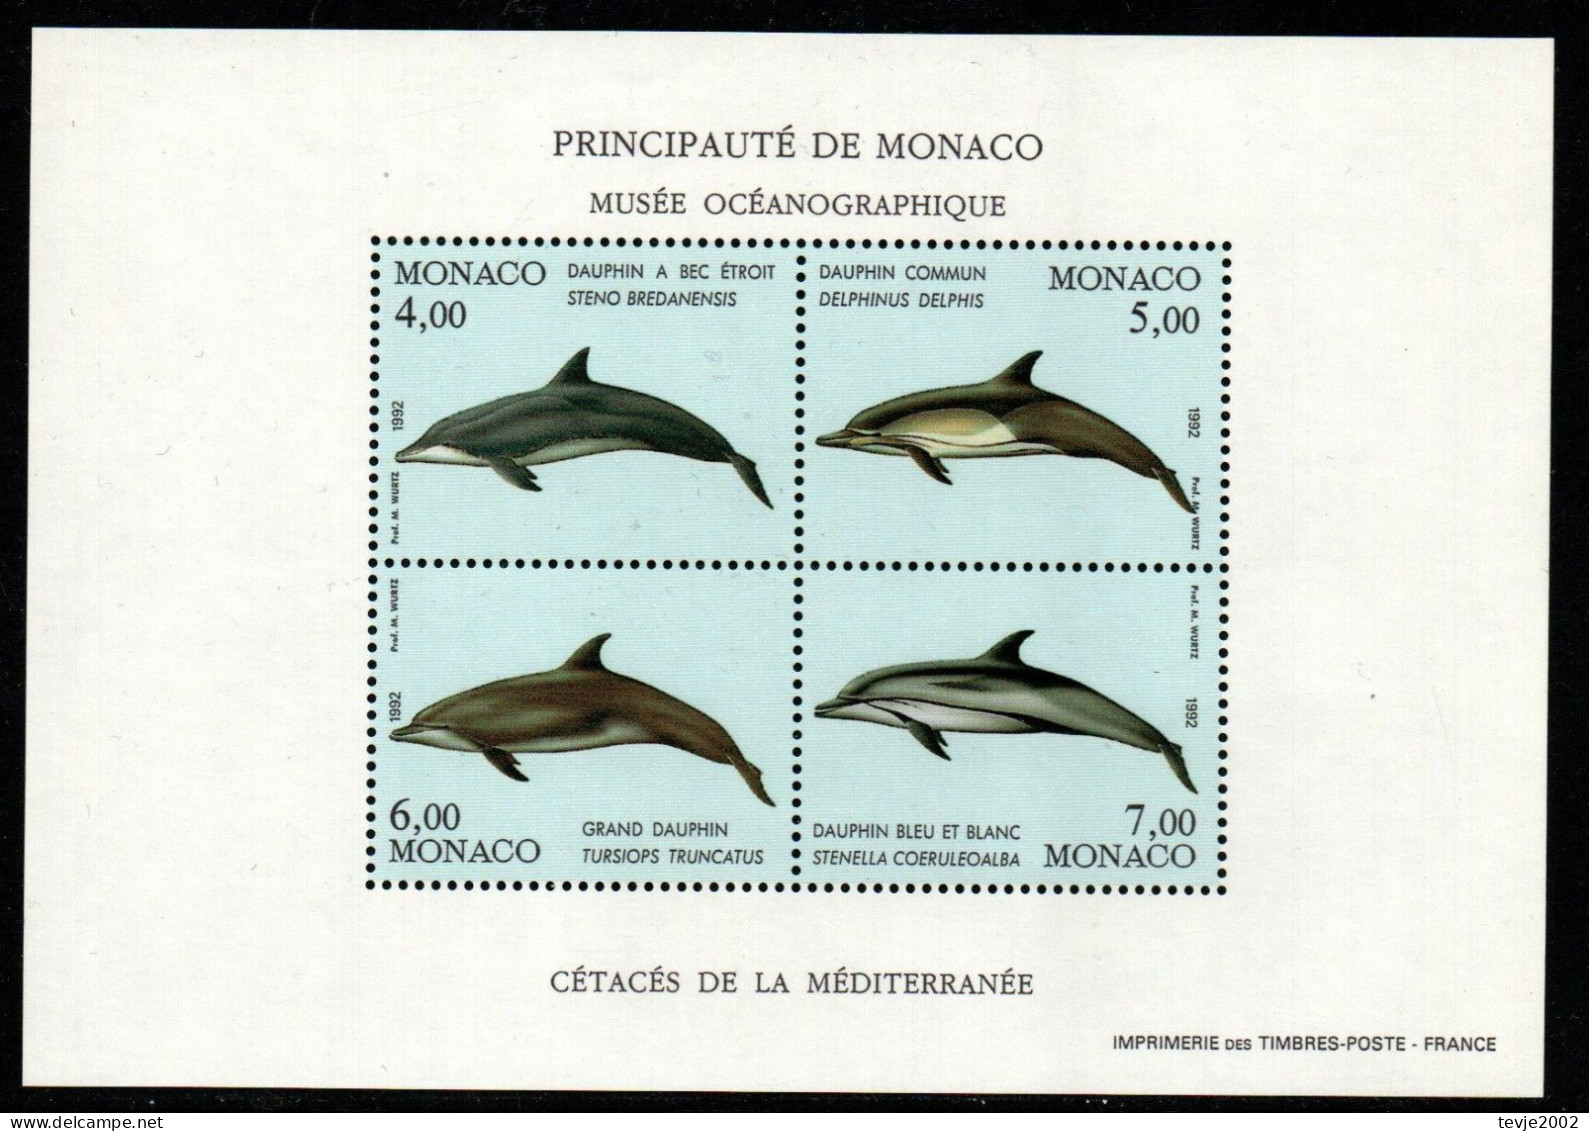 Monaco 1992 - Mi.Nr. Block 54 - Postfrisch MNH - Tiere Animals Deplphine Dolphins - Dolphins